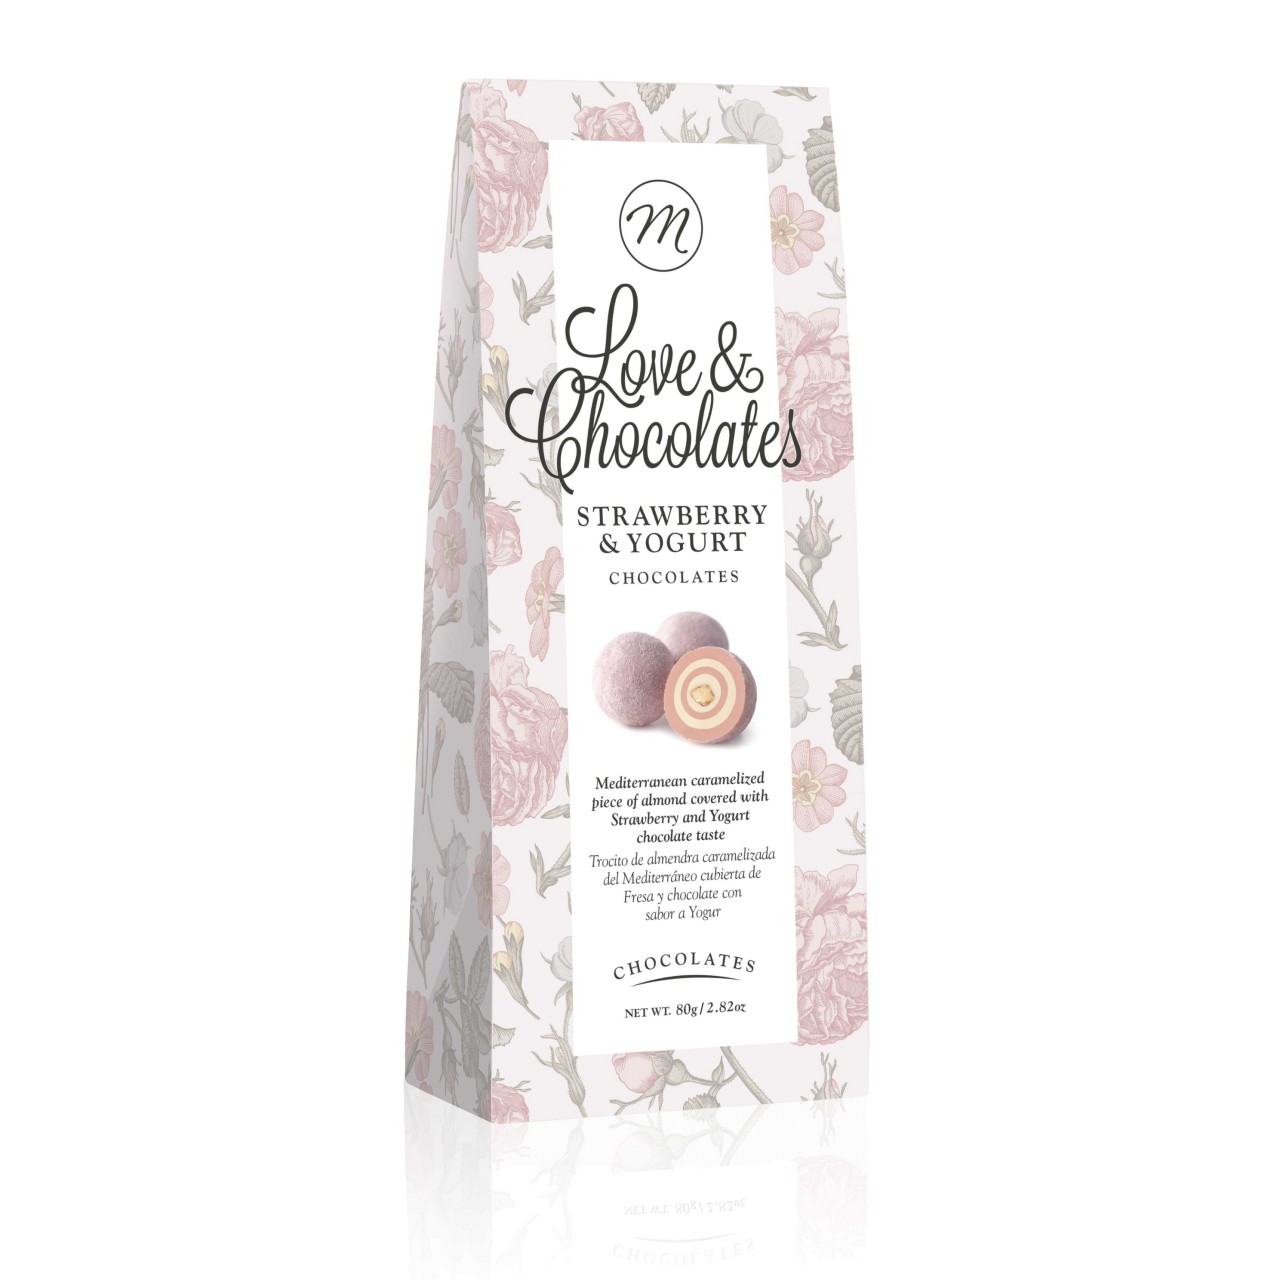 Love & Chocolates Strawberry & Yogurt Mandeln und Weiße Schokolade | MHD 28.02.25